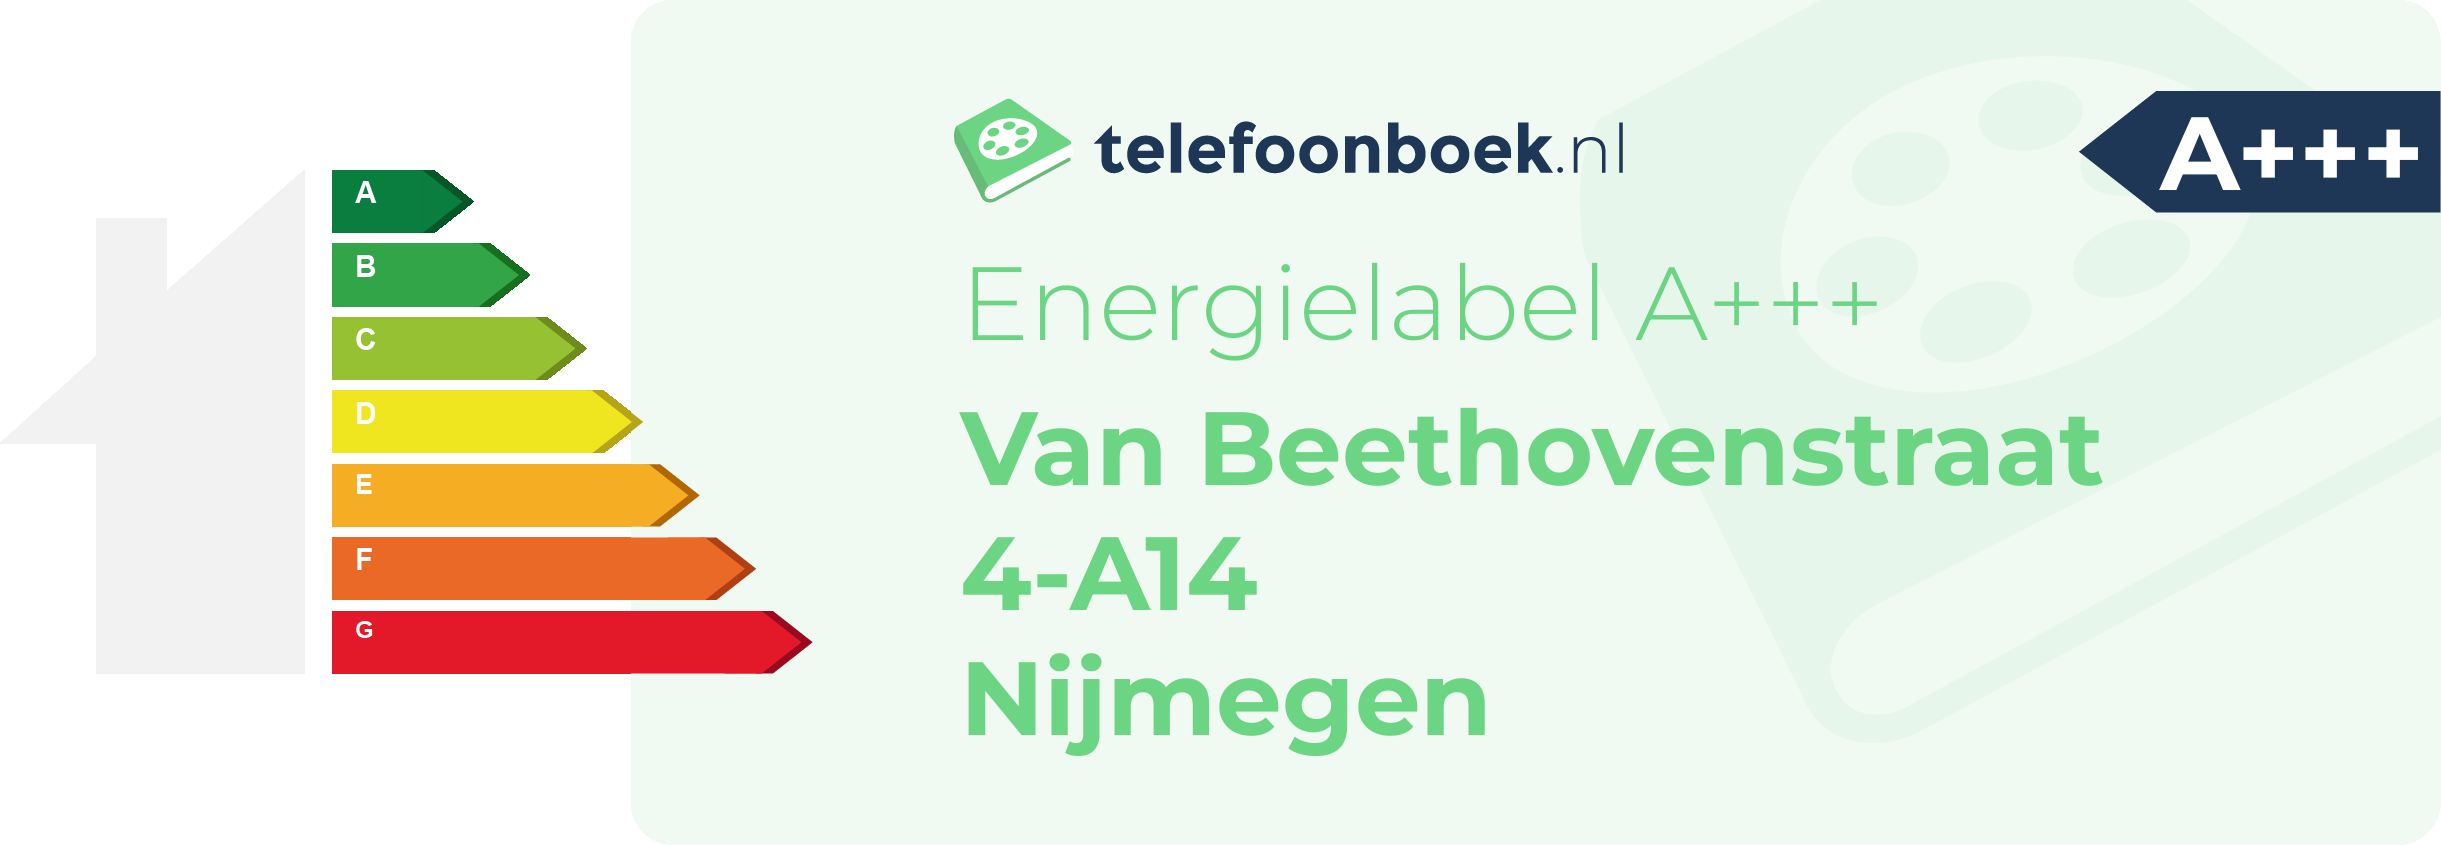 Energielabel Van Beethovenstraat 4-A14 Nijmegen